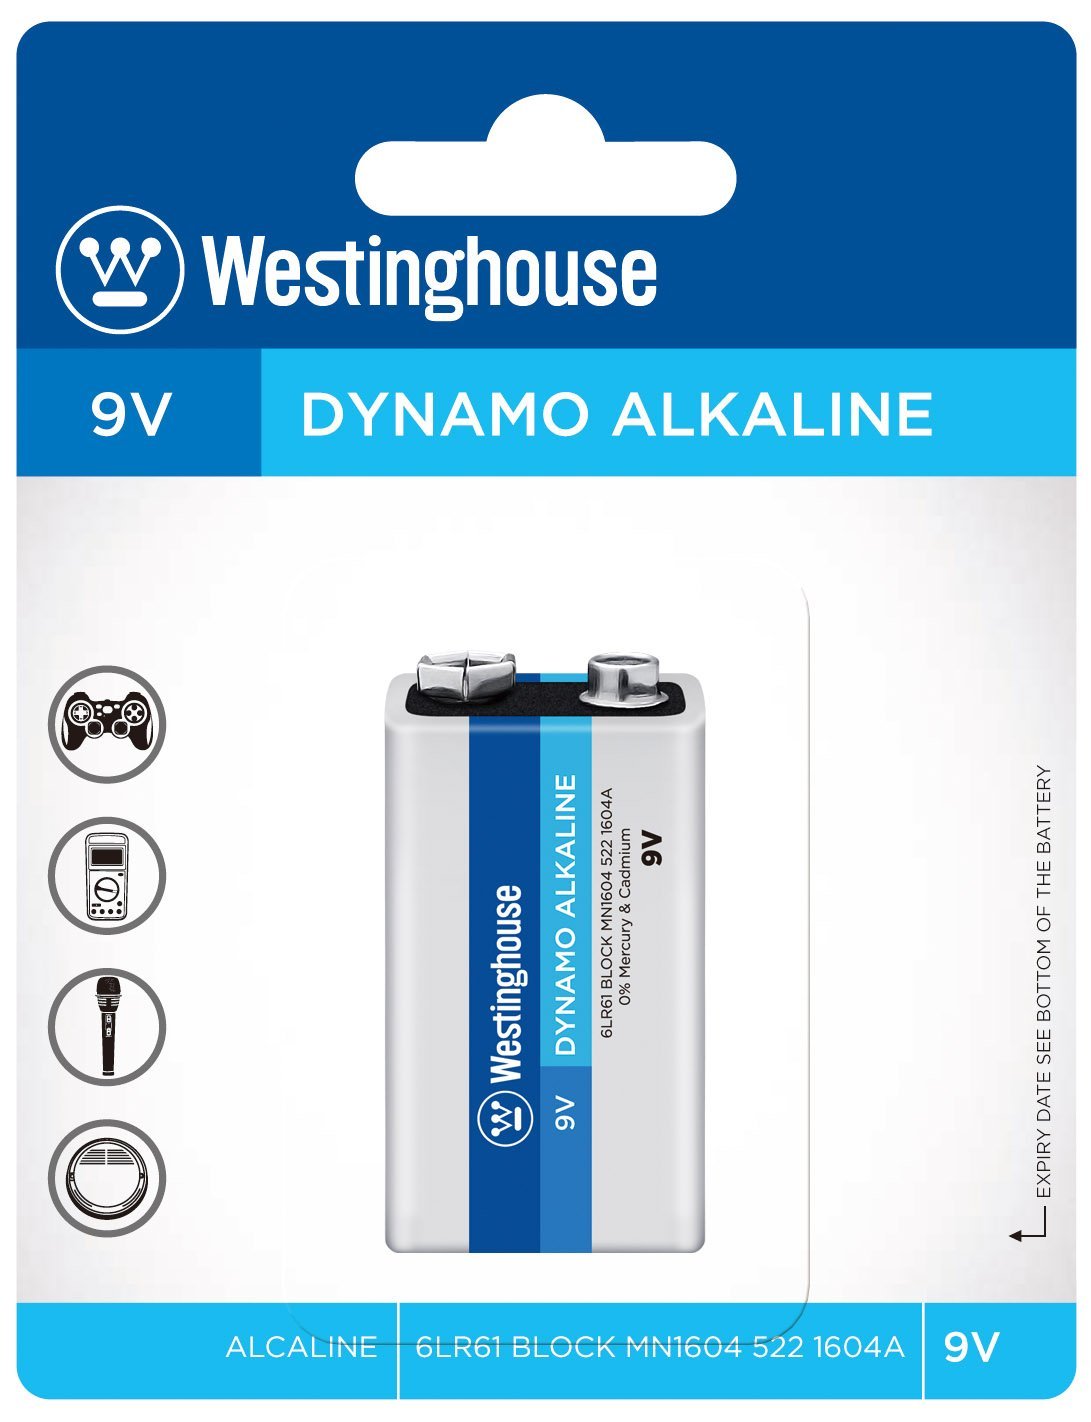 Westinghouse 9V Dynamo Alkaline - Blister Pack of 1